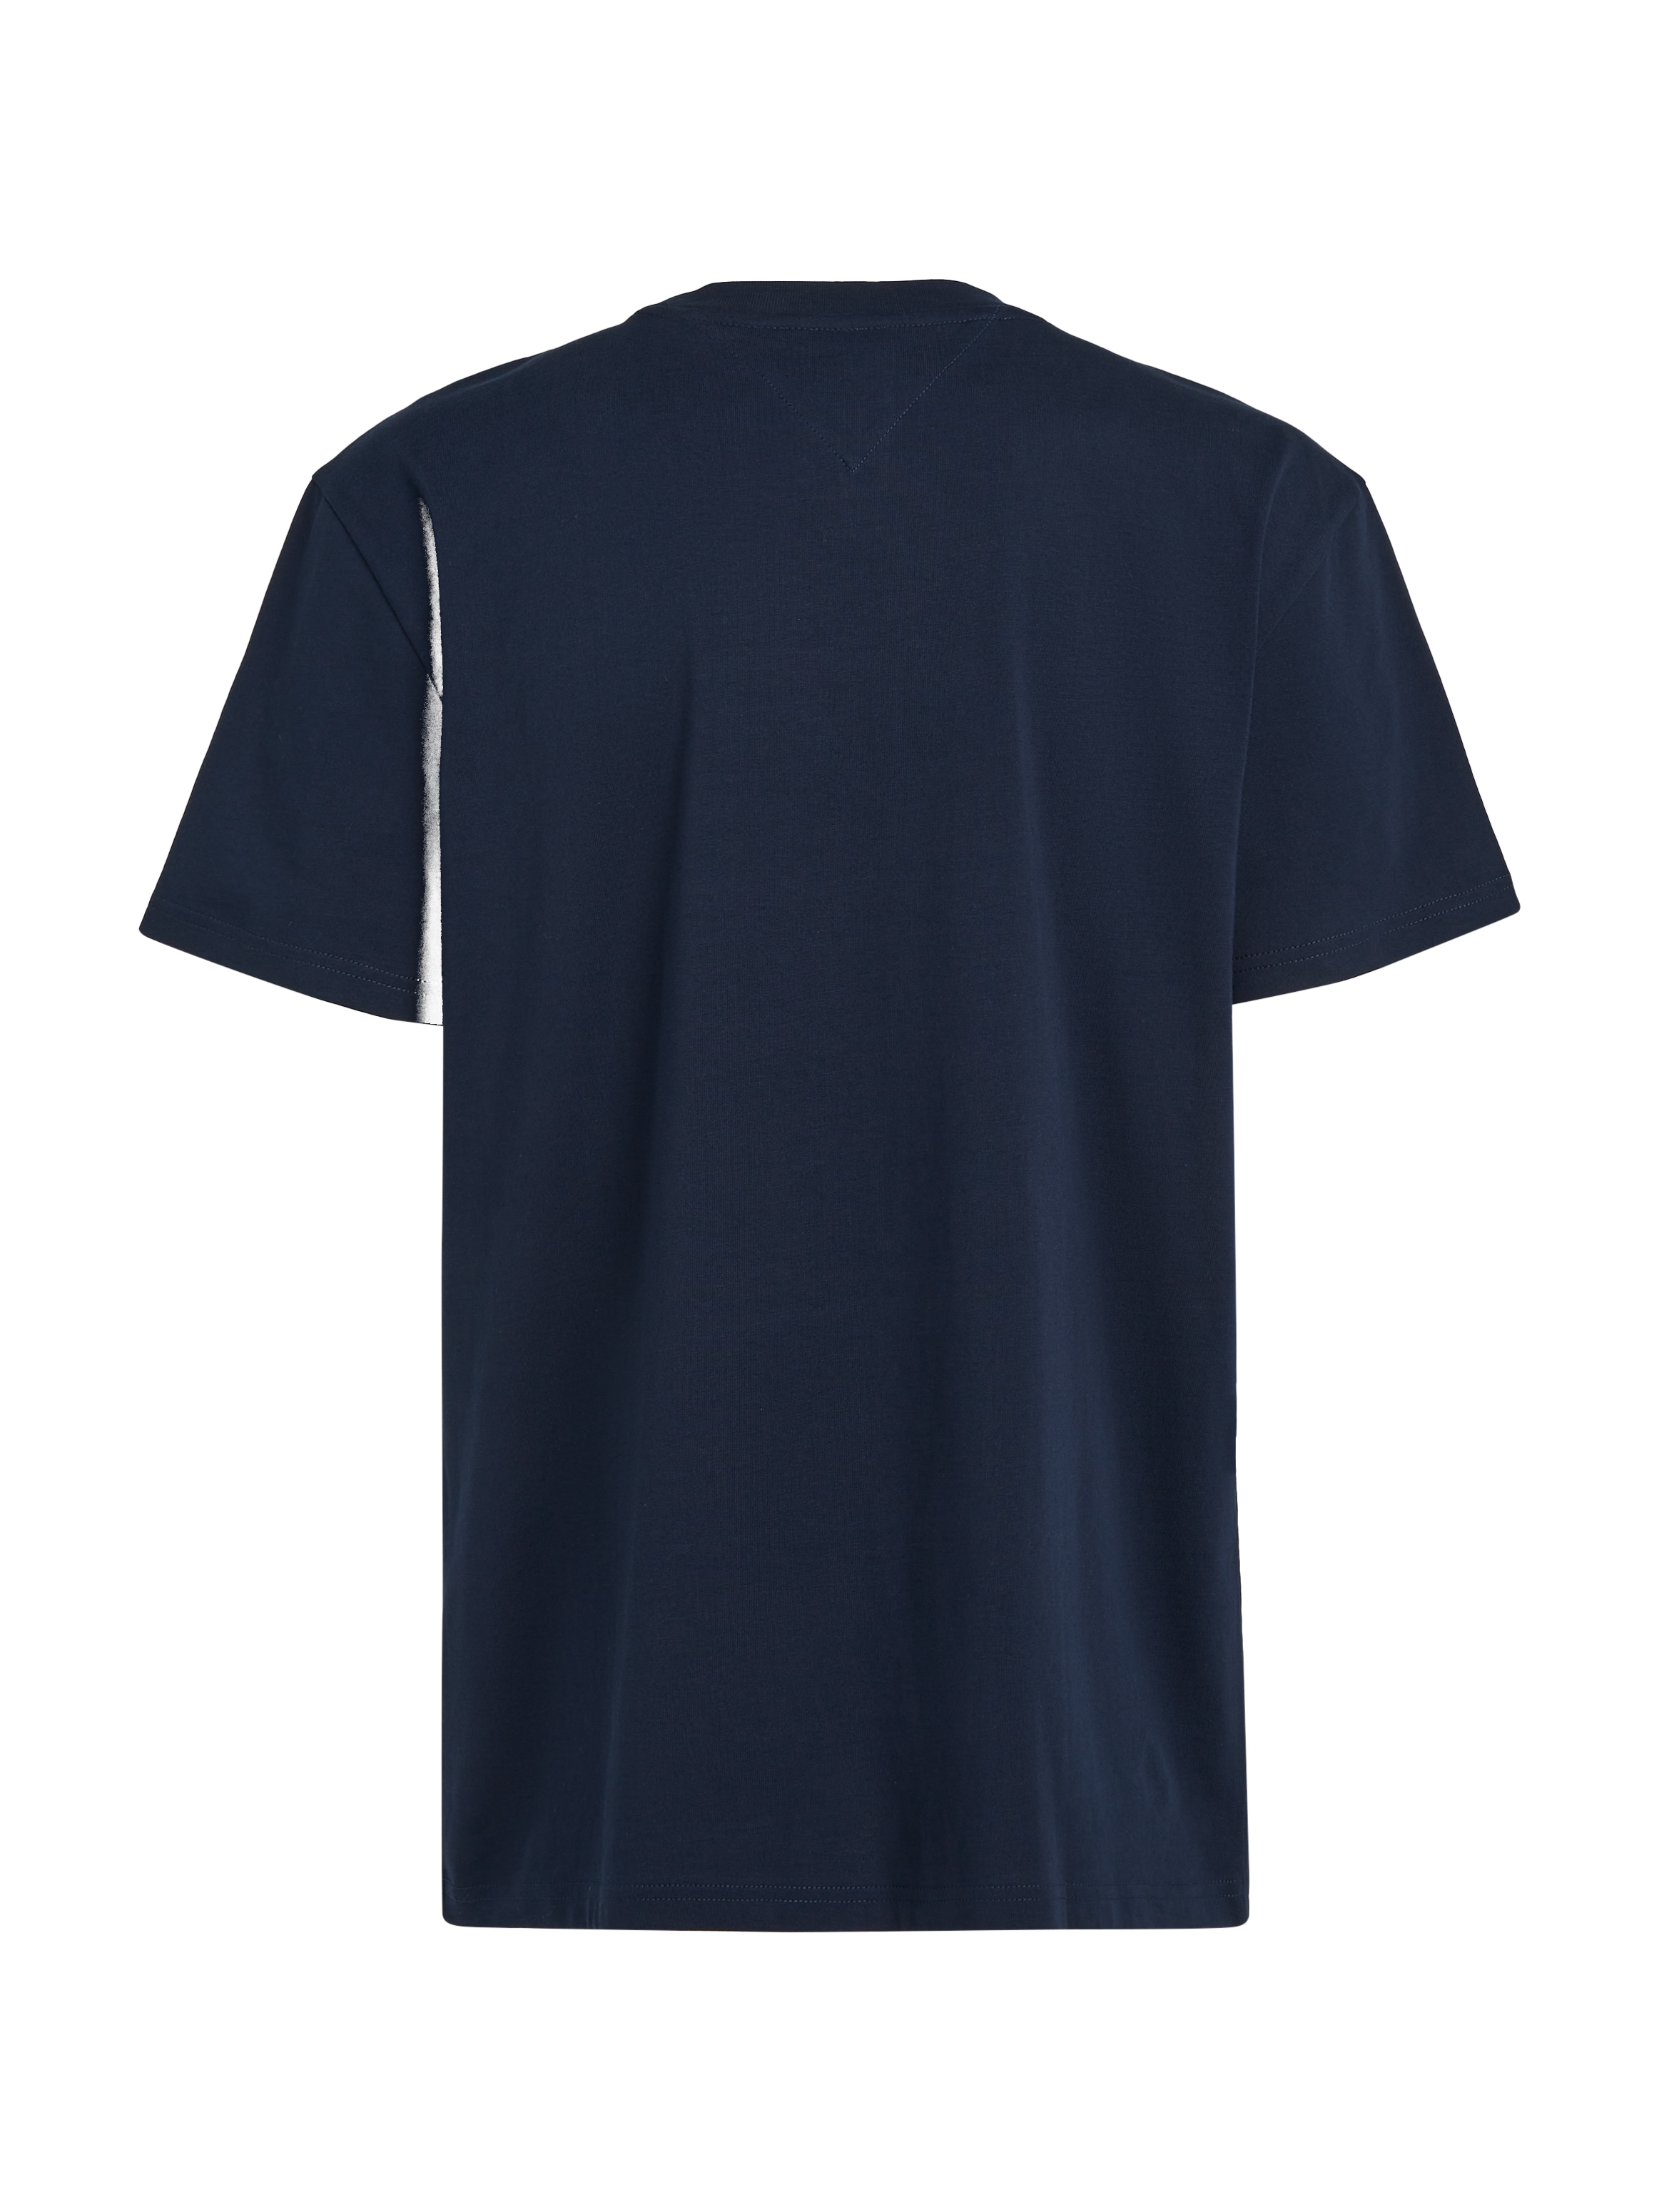 Tommy Jeans T-Shirt »TJM REG LINEAR CUT & SEW TEE«